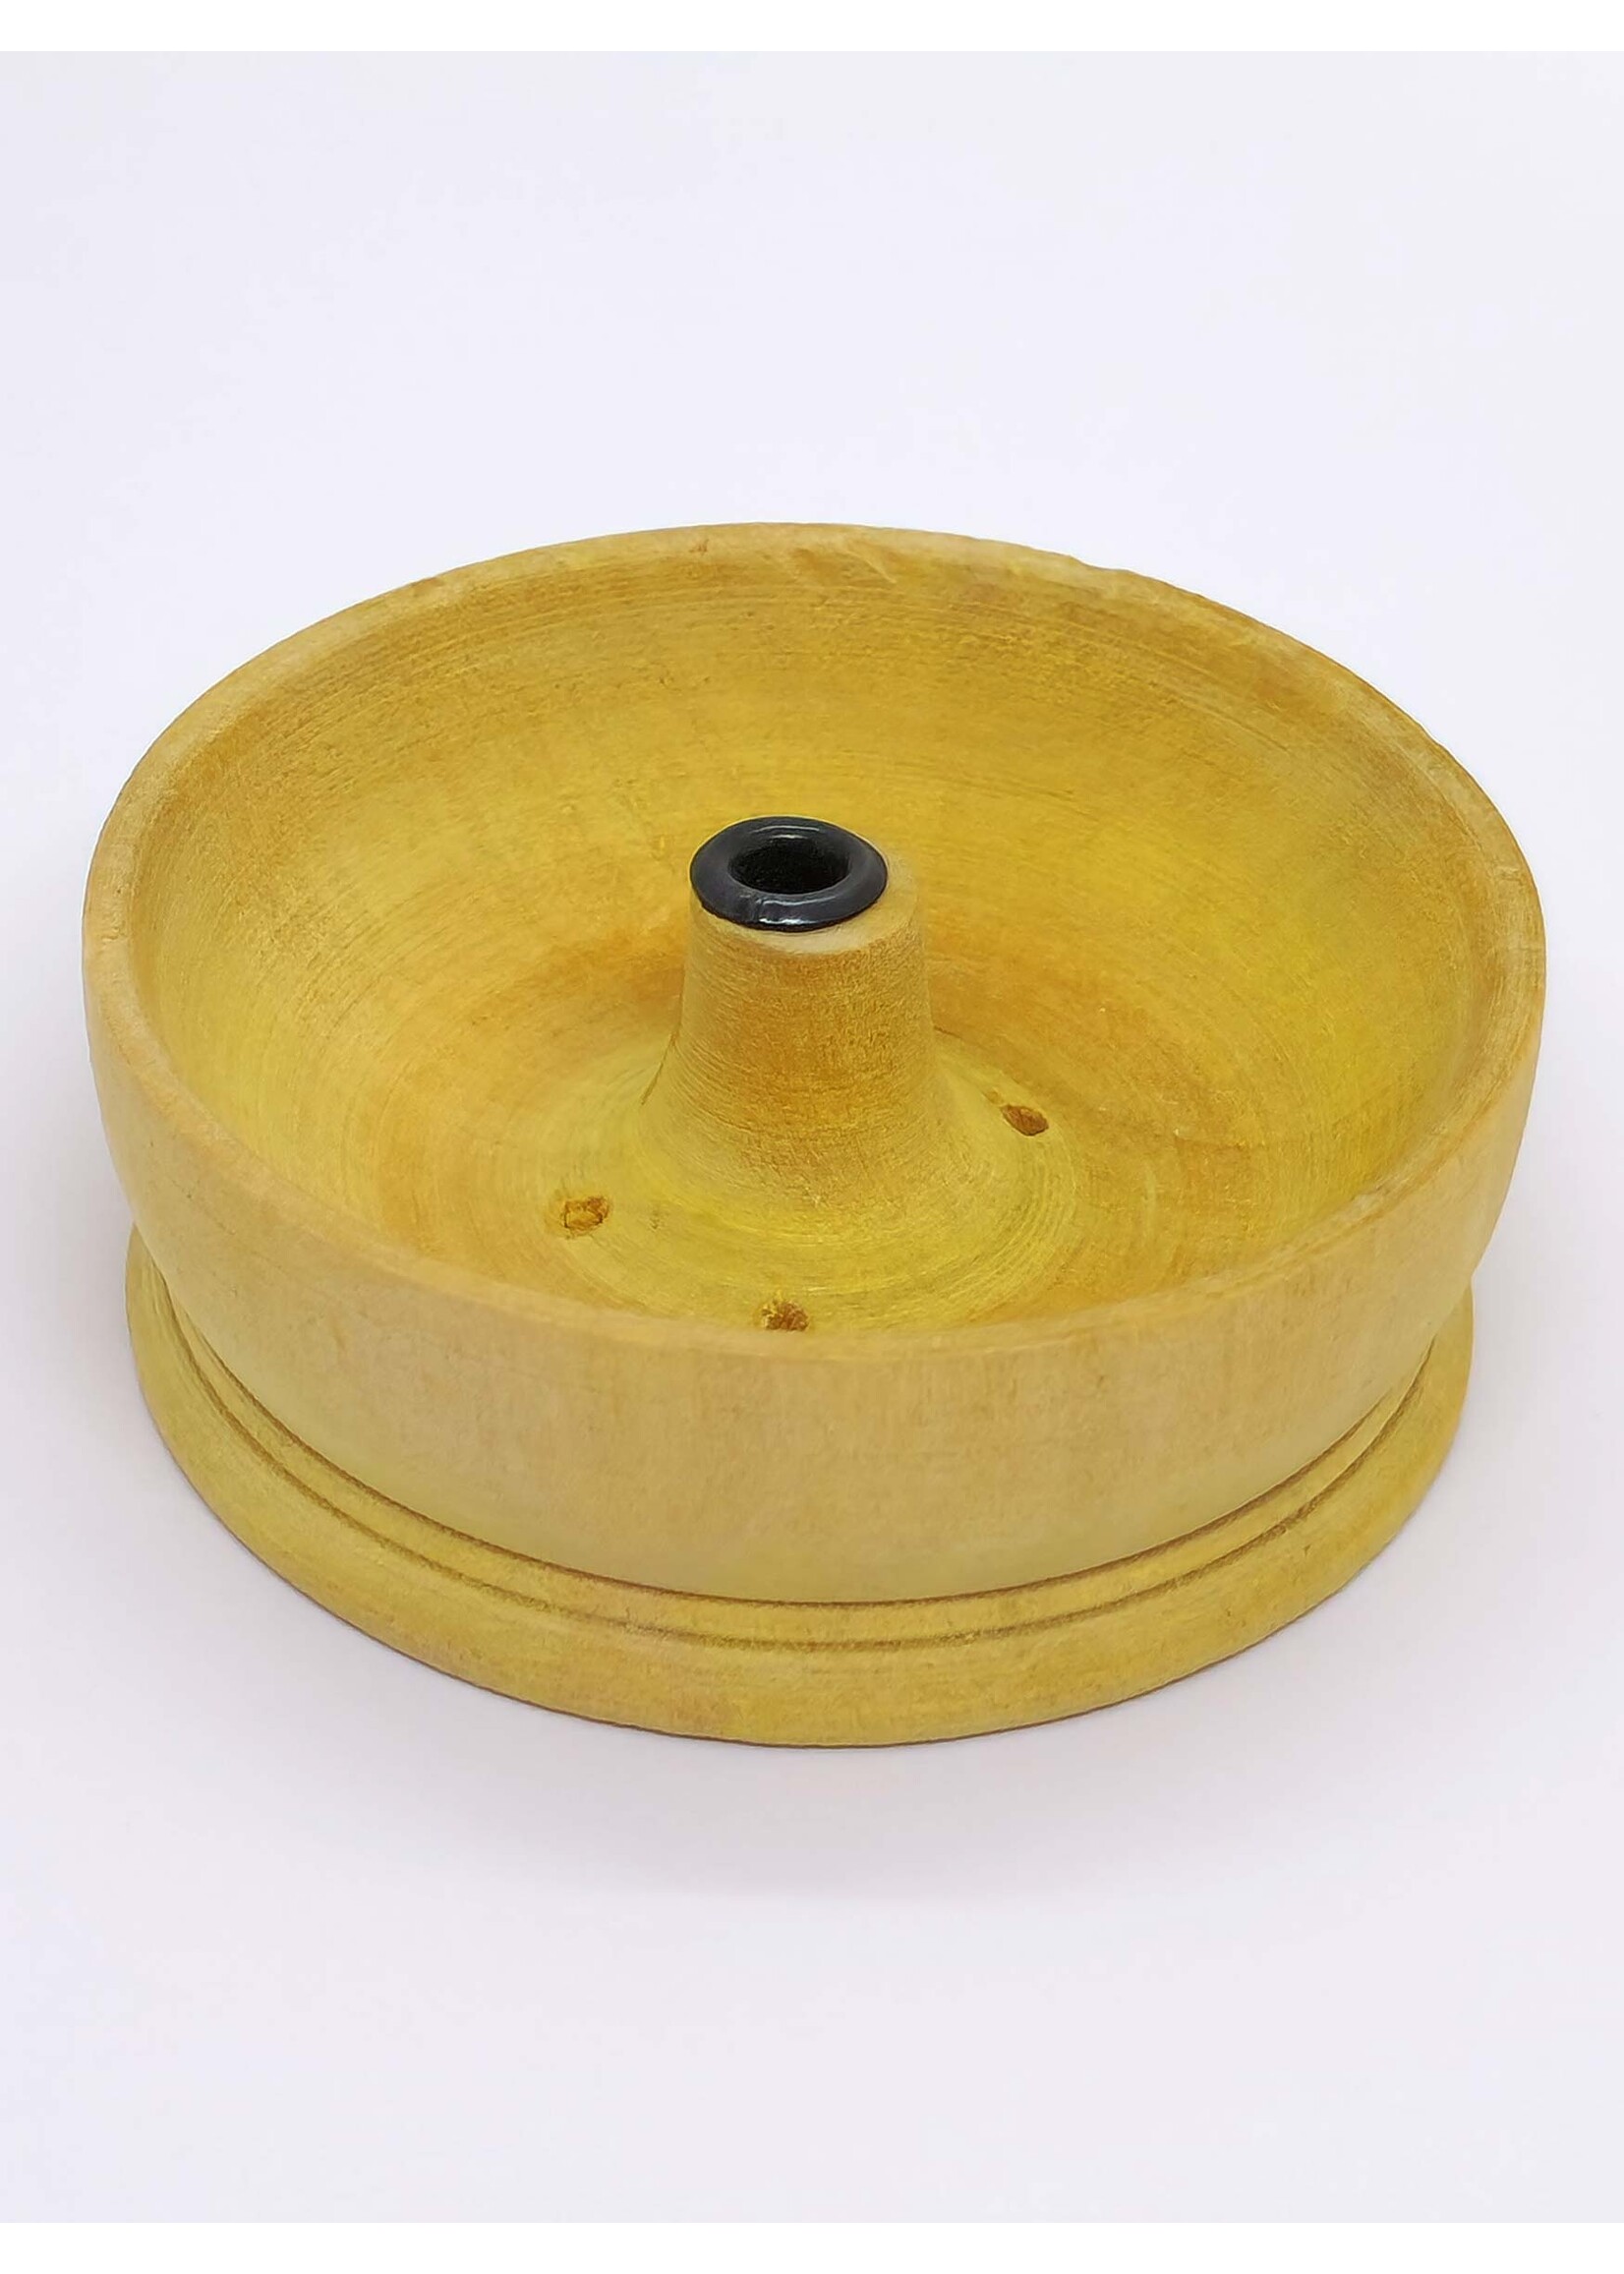 Räucherstäbchenhalter aus Holz, rund